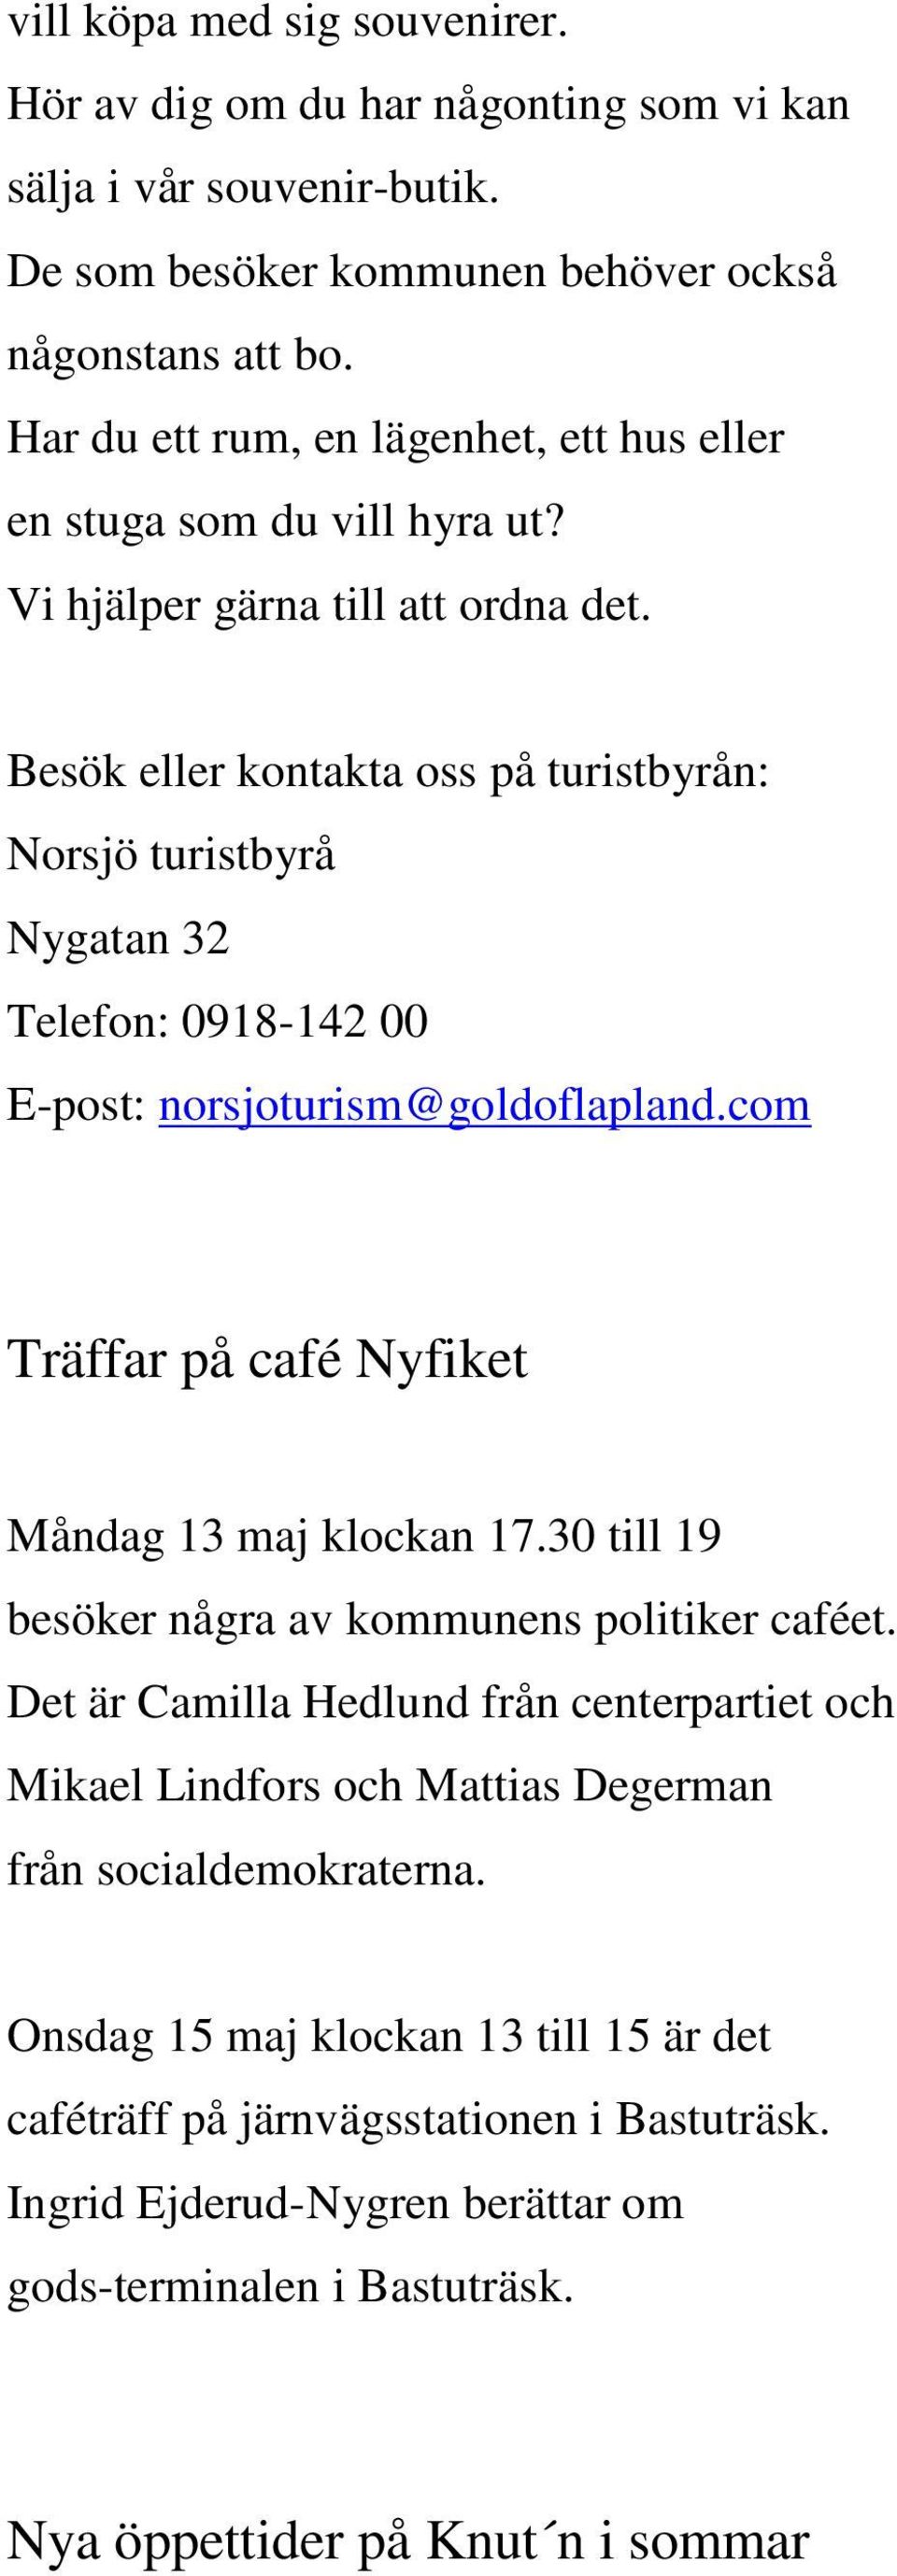 Besök eller kontakta oss på turistbyrån: Norsjö turistbyrå Nygatan 32 Telefon: 0918-142 00 E-post: norsjoturism@goldoflapland.com Träffar på café Nyfiket Måndag 13 maj klockan 17.